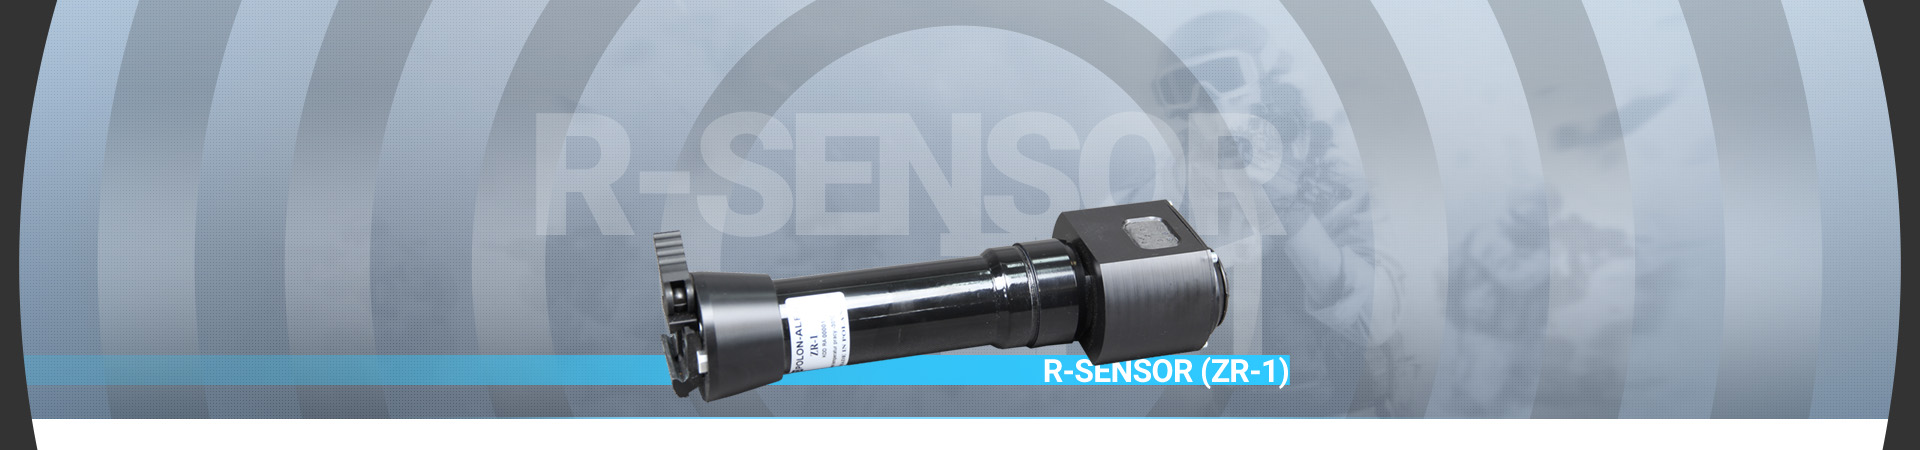 r-sensor-zr1-1920x450